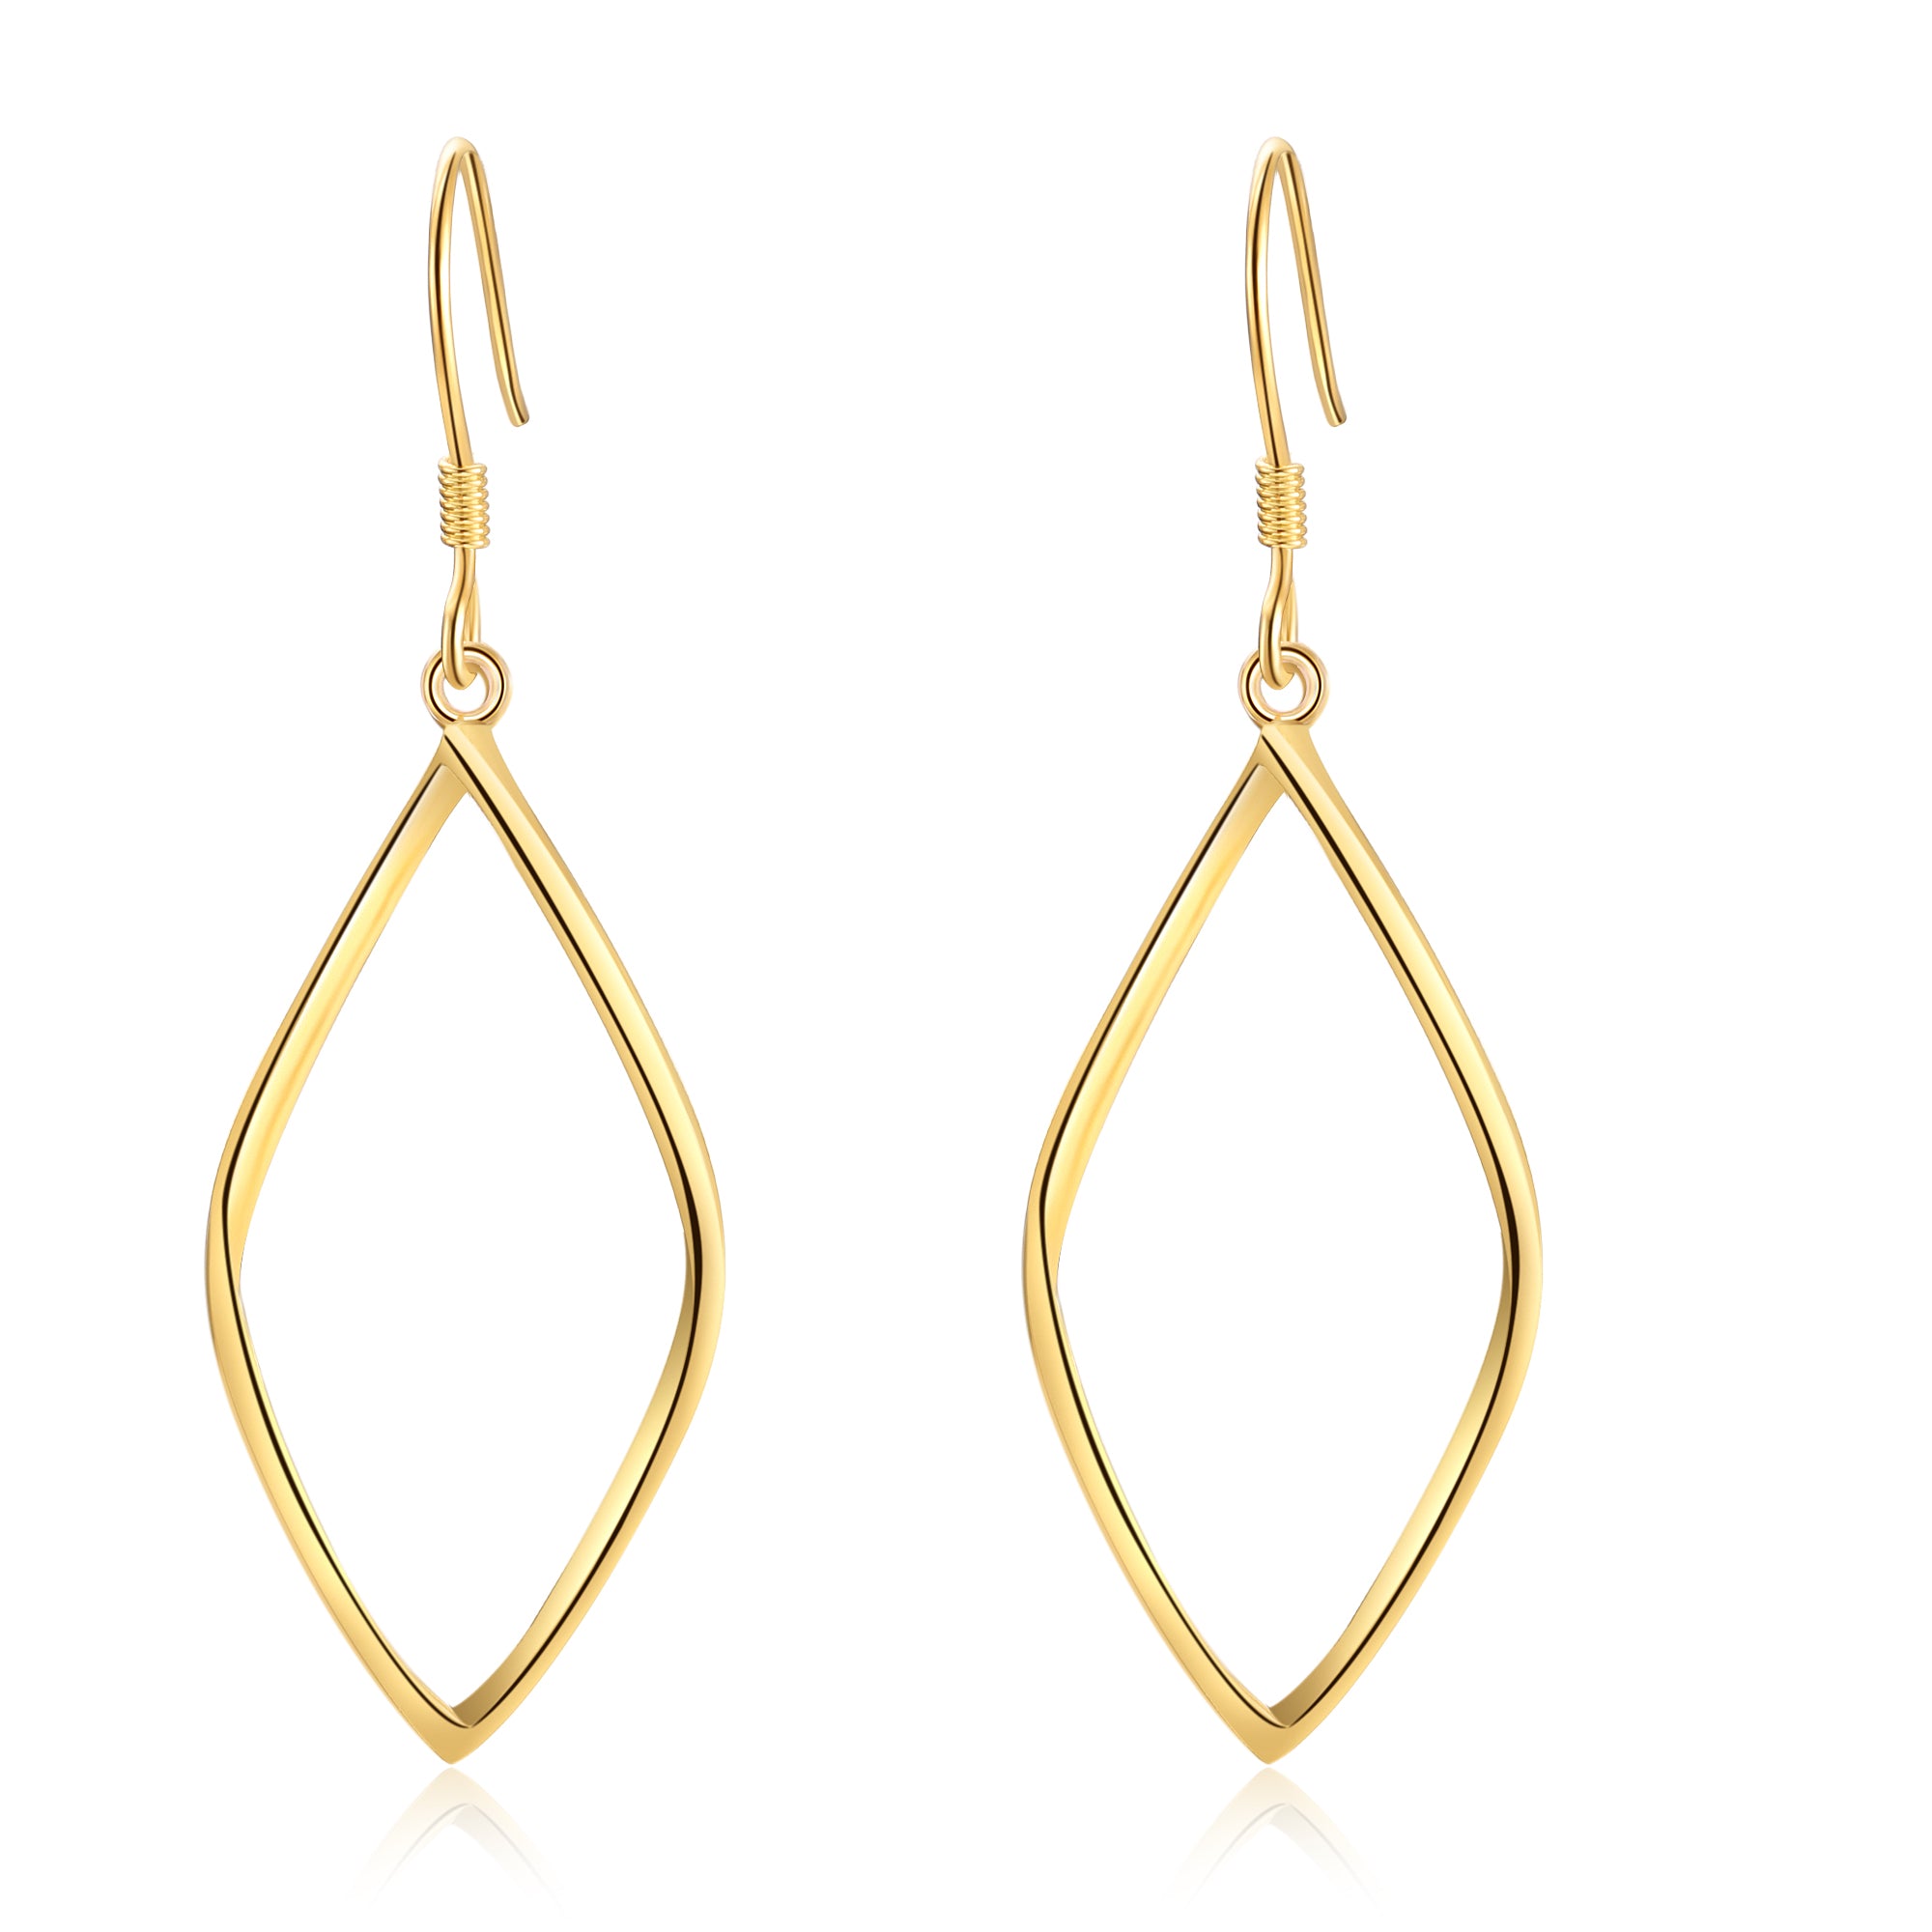 Beautiful pair of original shaped earrings by hidaaha - Hanging drops e -  Afrikrea